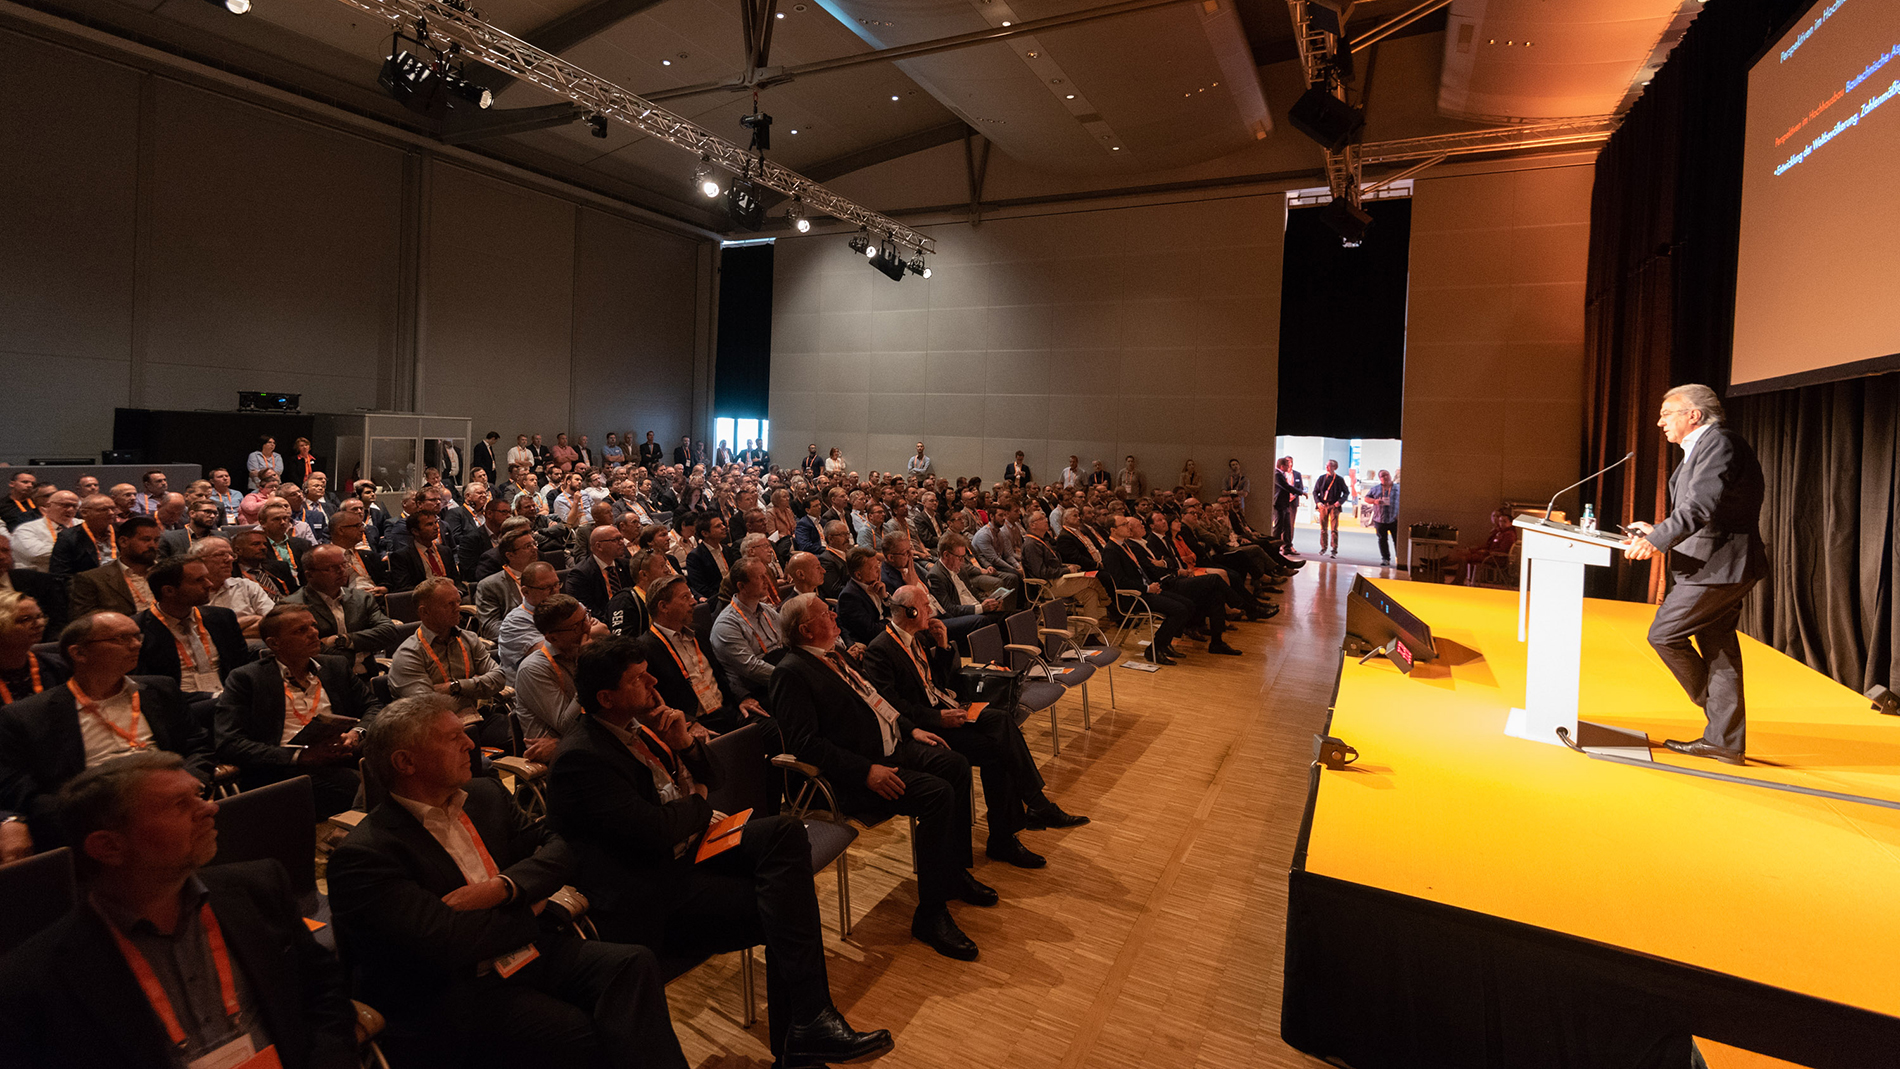 Das E2 Forum Frankfurt 2018: Forum der Innovationen, Impulse und Kontakte für rund  420 Experten der vertikal-horizontalen Mobilität im Gebäude der Zukunft